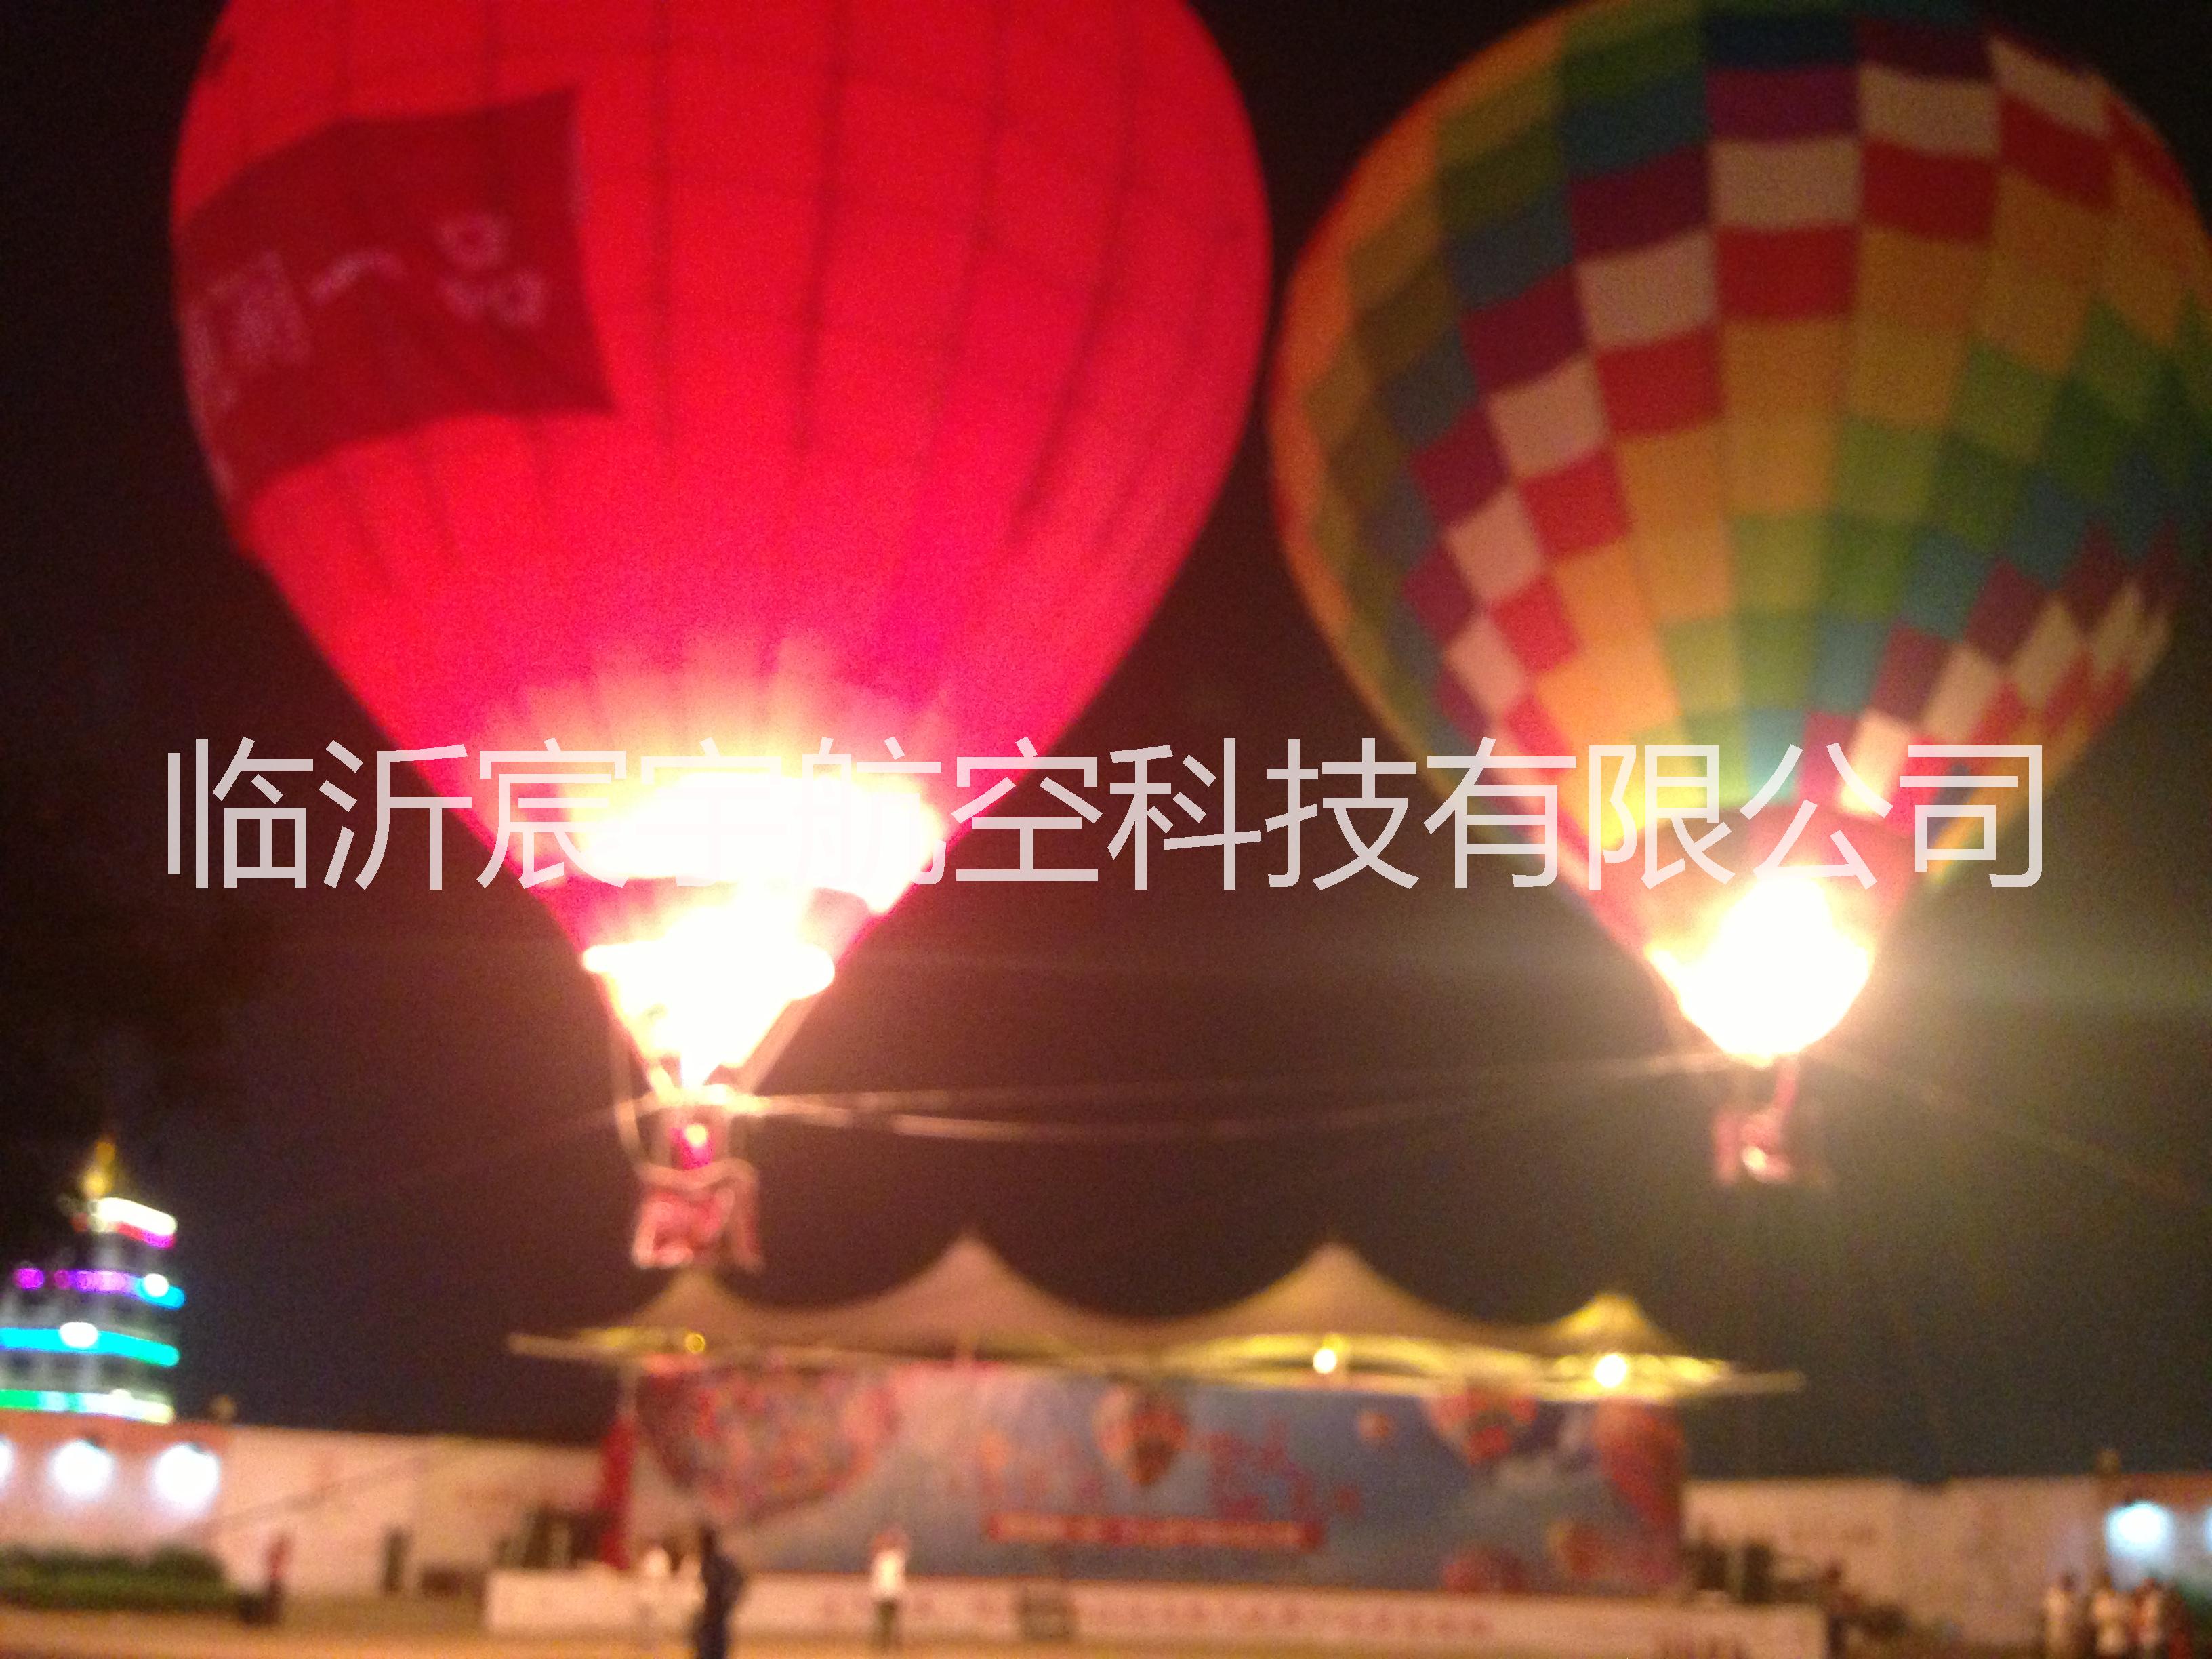 杭州热气球价格，宁波热气球价格，供应杭州热气球价格，宁波热气球价格，载人热气球租赁价格